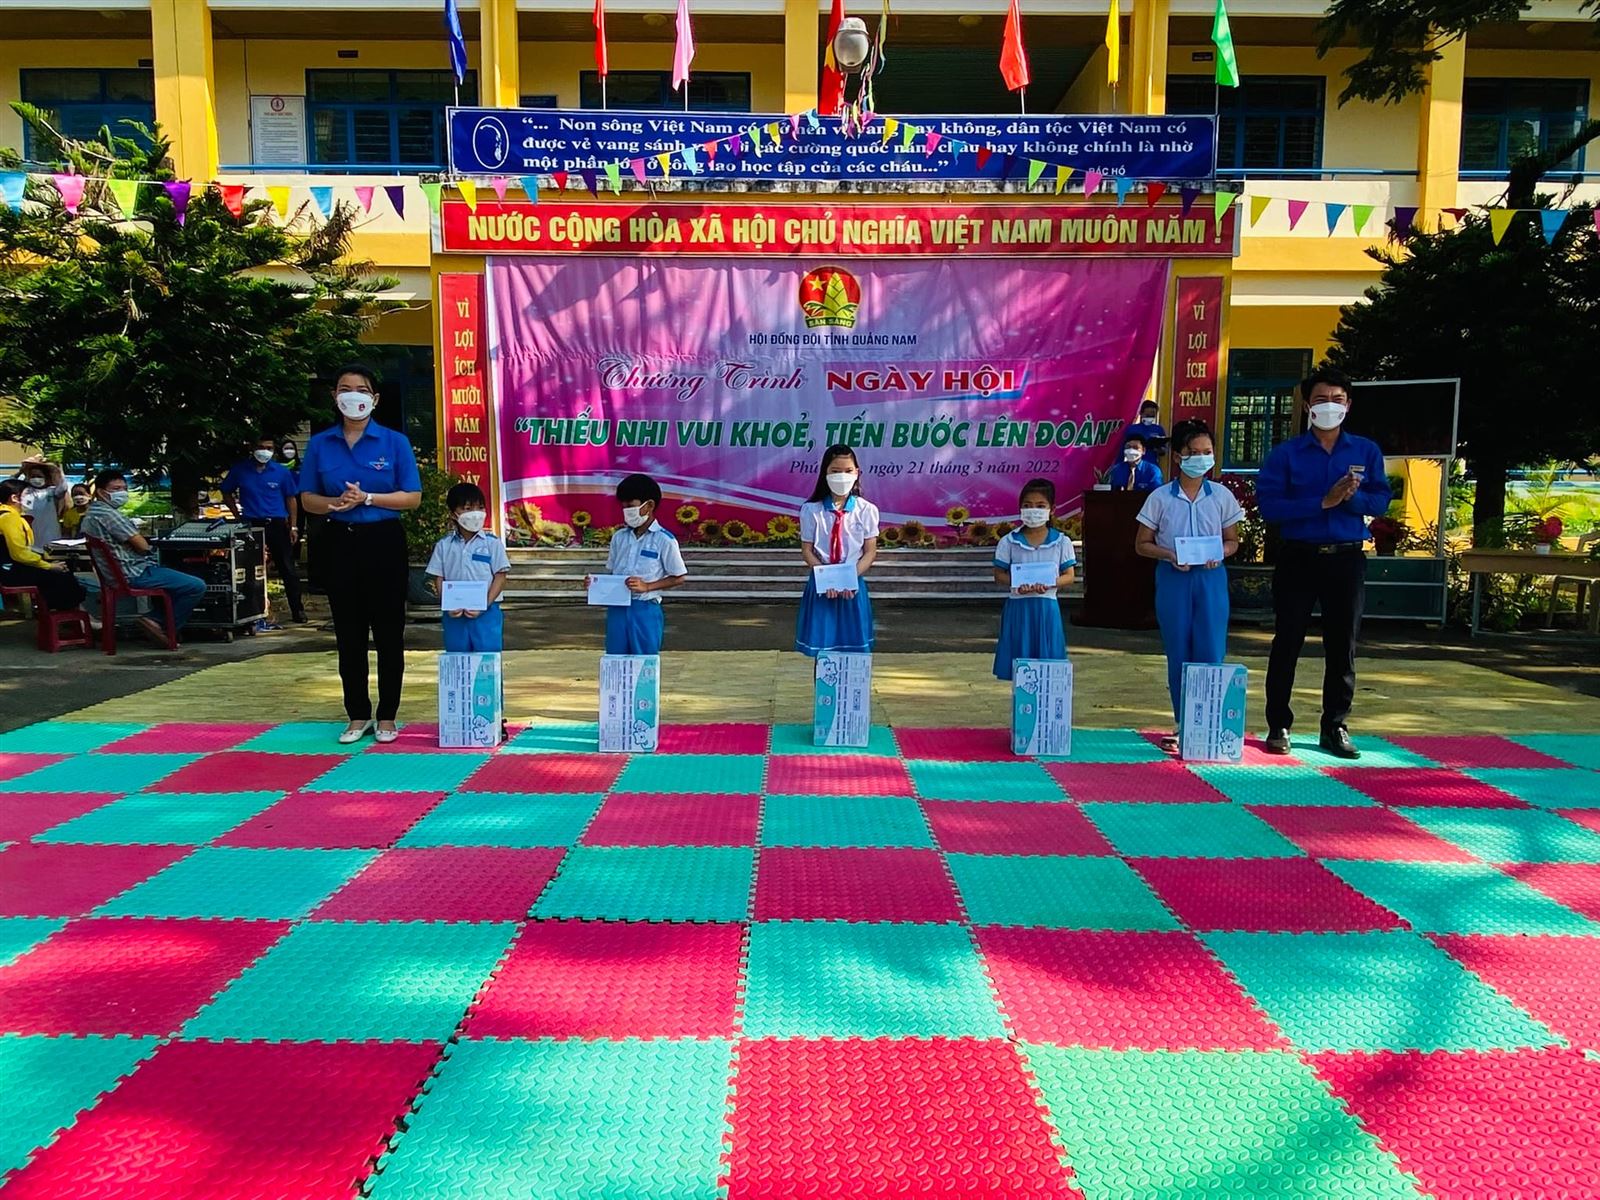 Quảng Nam: Tổ chức điểm Ngày hội Thiếu nhi vui khỏe - Tiến bước lên Đoàn cấp khu vực